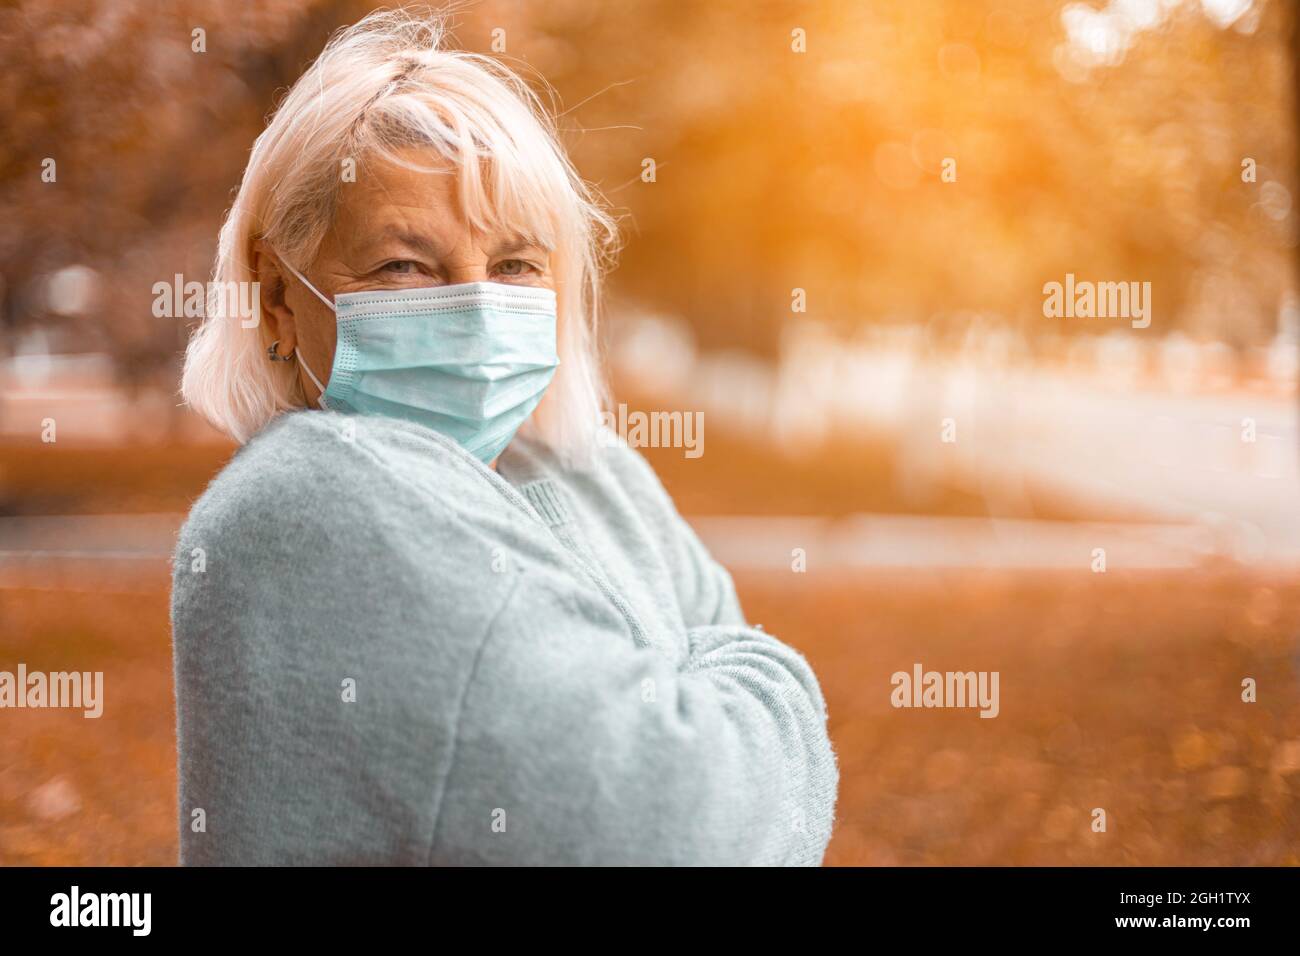 Coronavirus, COVID-19 Pandemiekonzept. Blonde Frau trägt Gesichtsmaske Schutz für Krankheit Virus SARS-CoV-2 an der Straße der Stadt Stockfoto